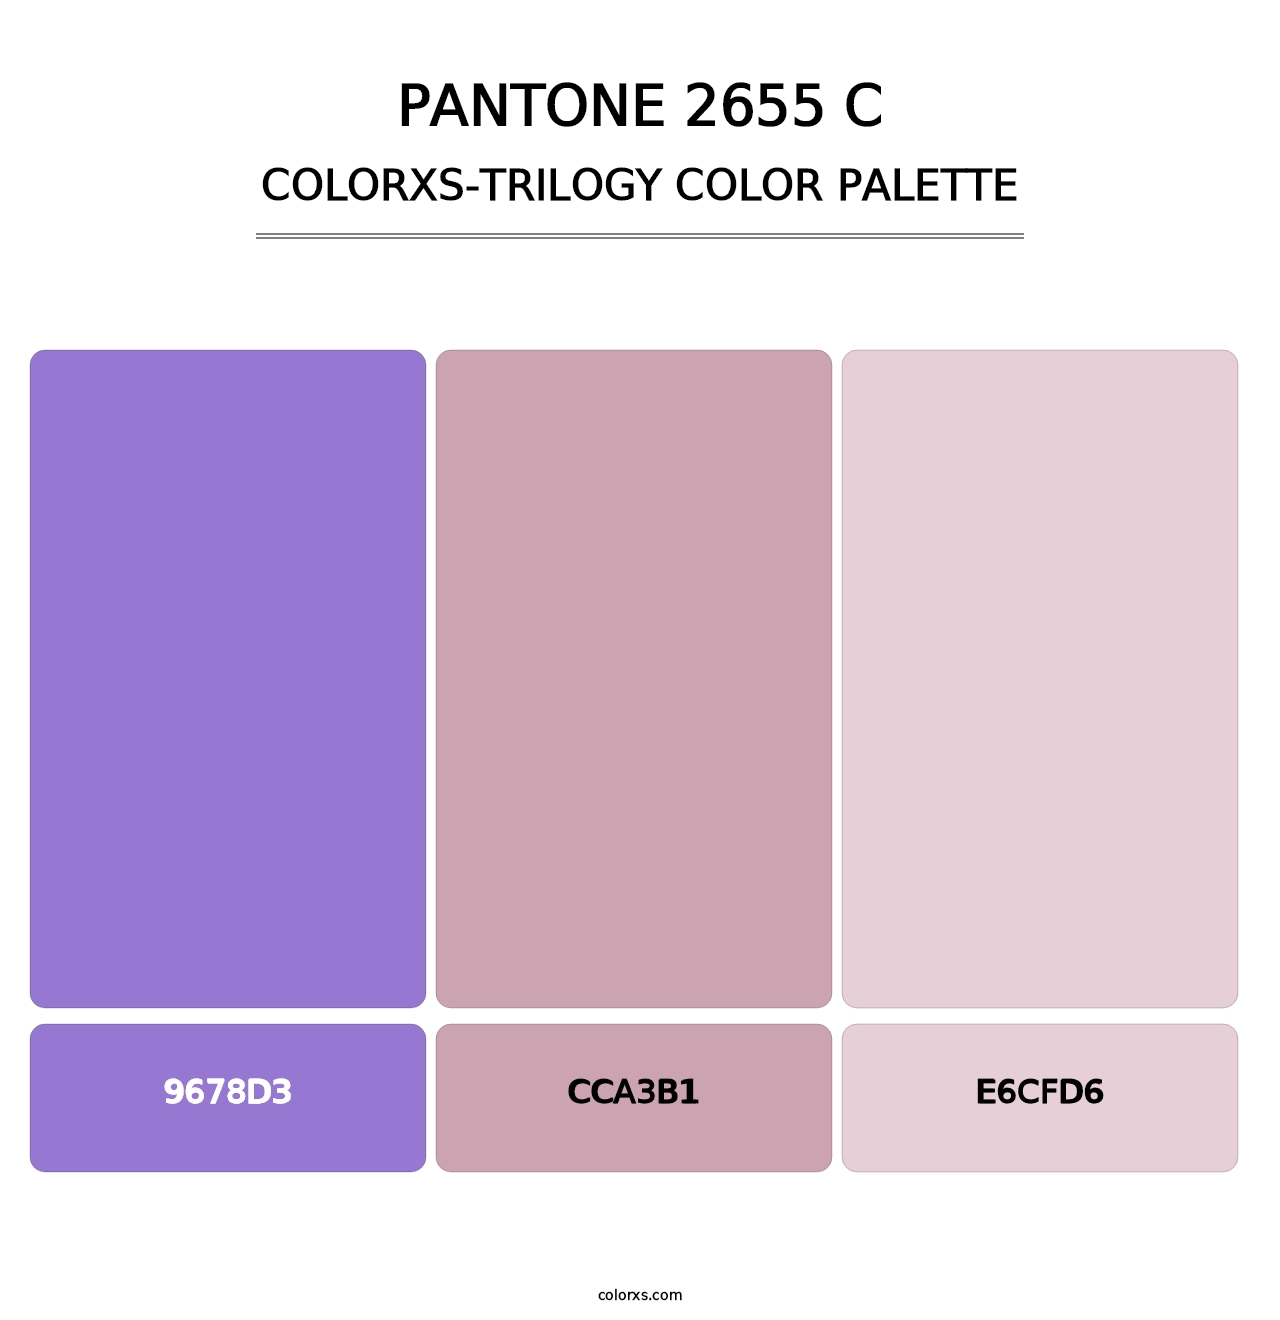 PANTONE 2655 C - Colorxs Trilogy Palette